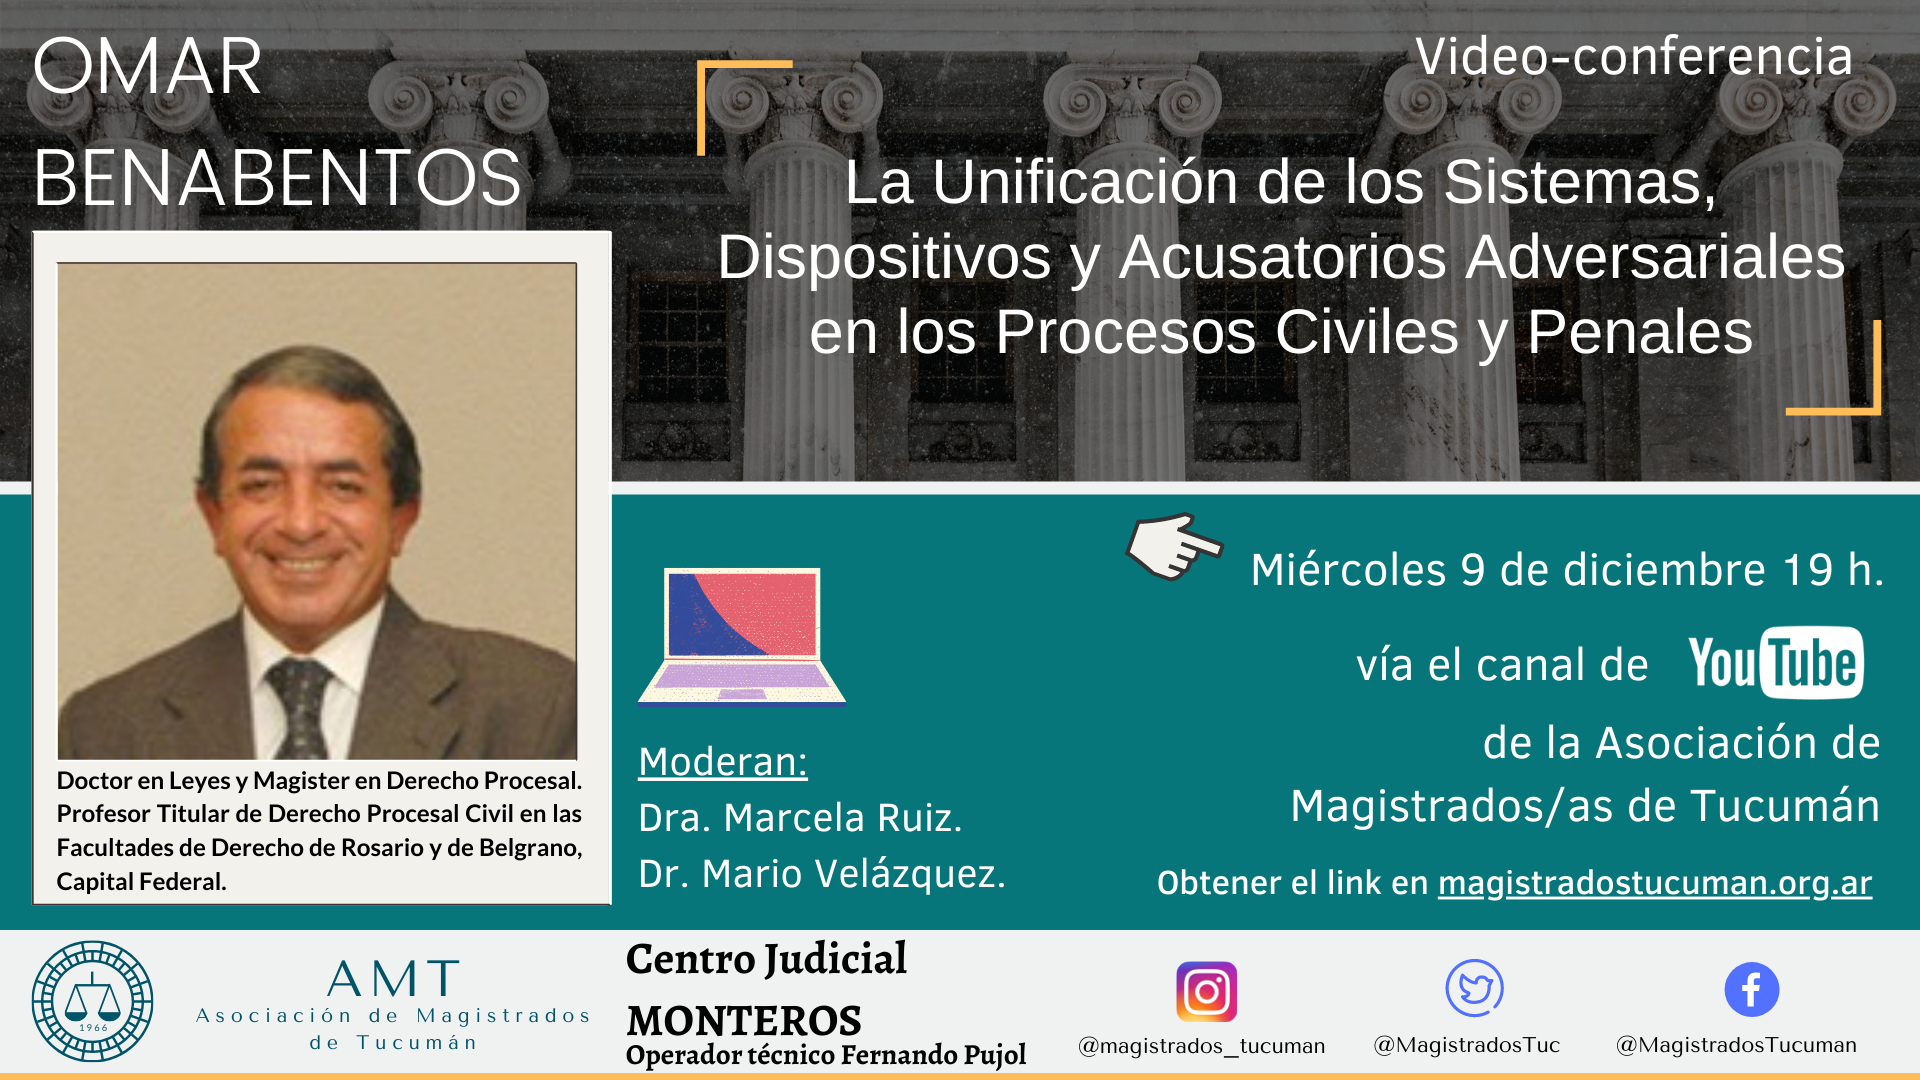 Vuelva a ver la conferencia de Omar Benabentos «La unificación de los sistemas, dispositivos y acusatorios adversariales»